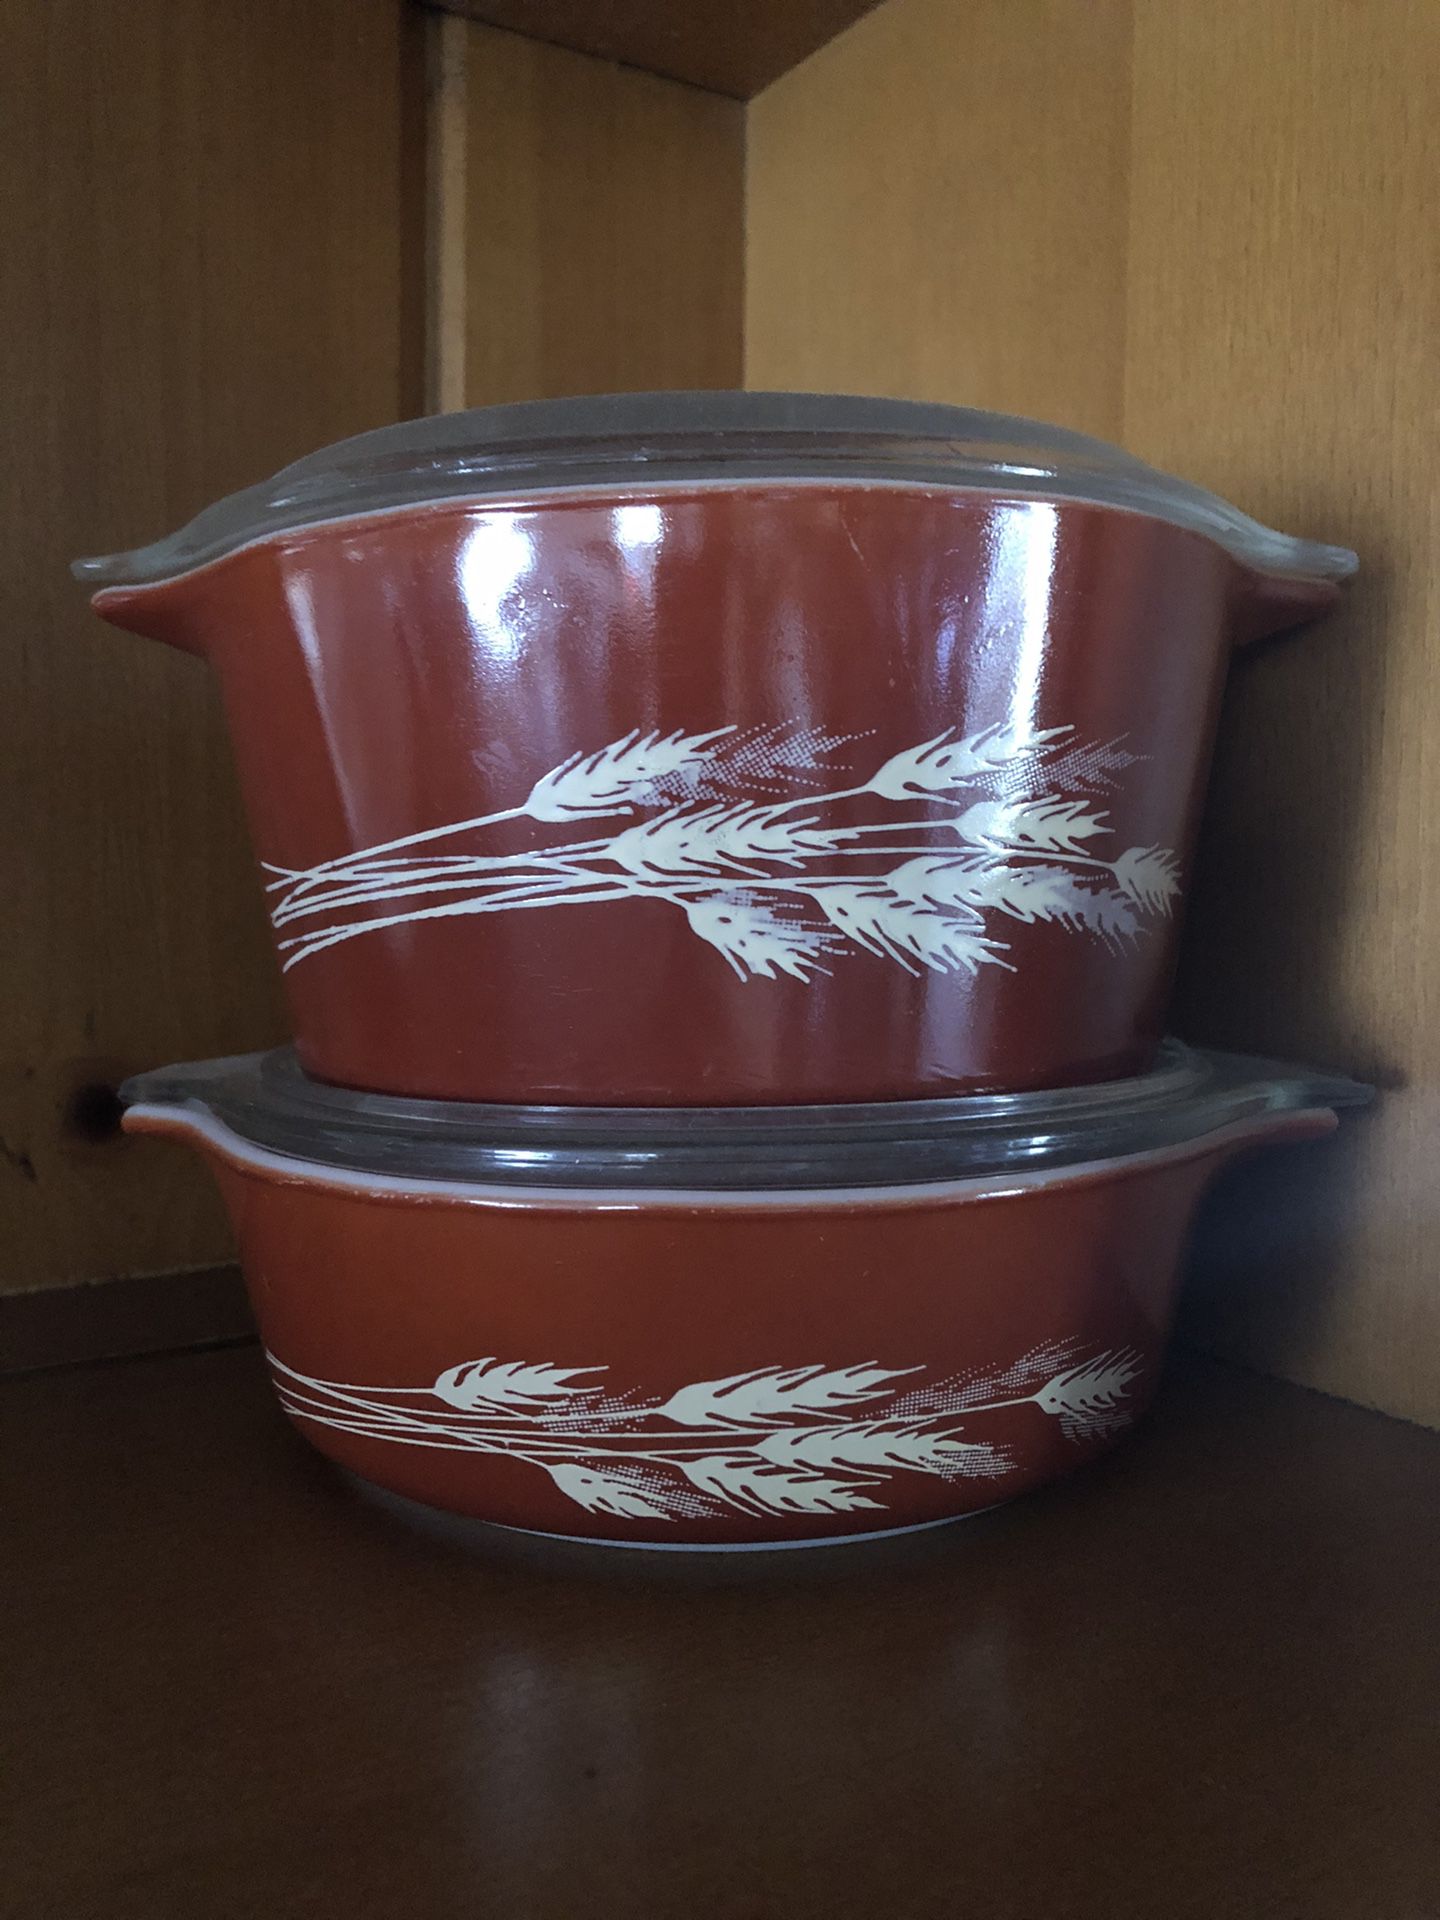 Pyrex autumn harvest casserole bowls